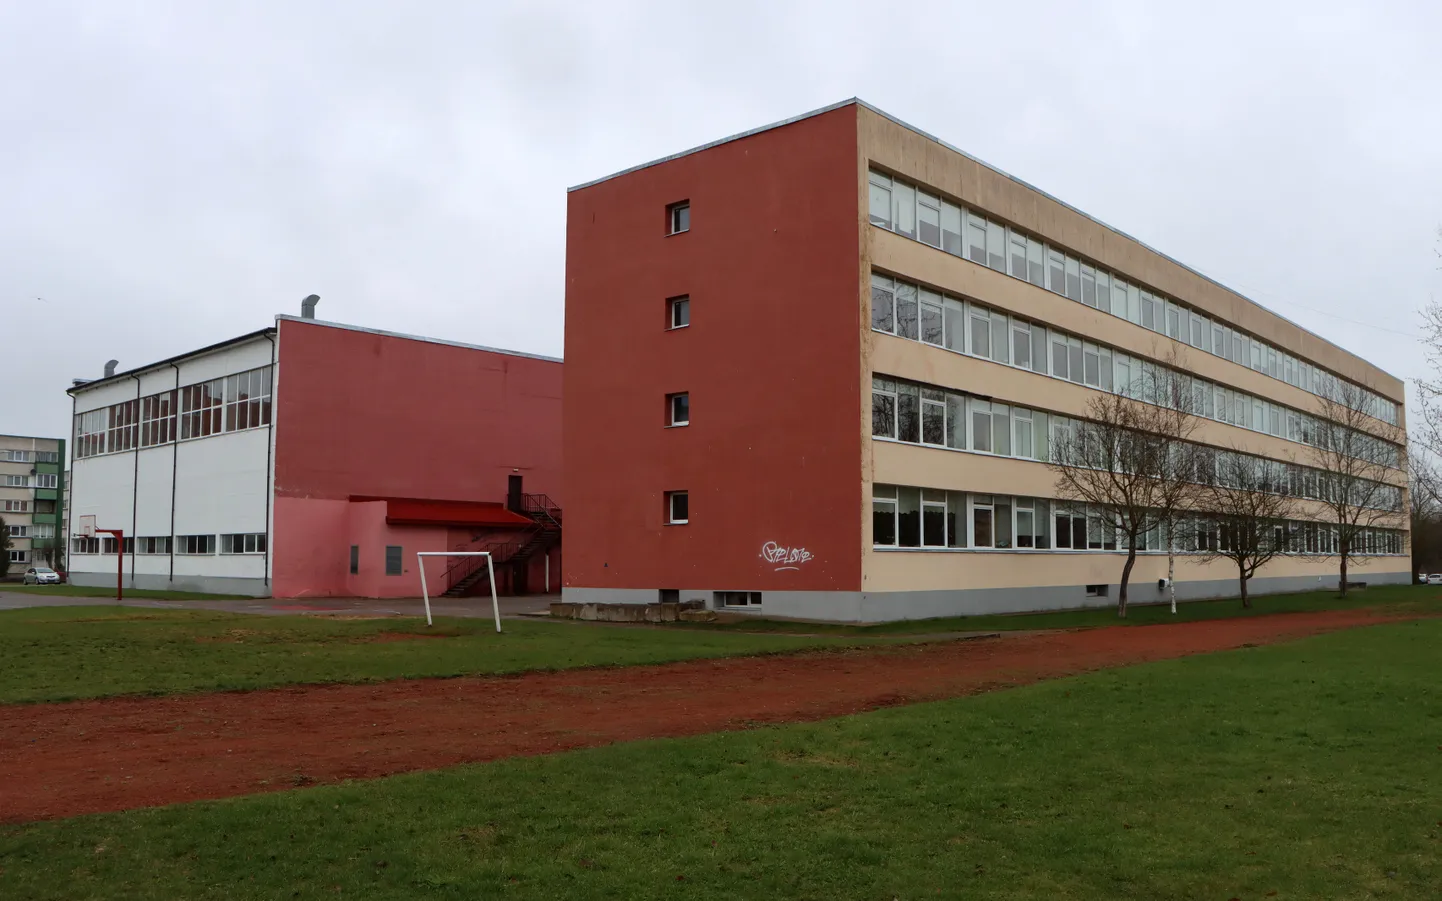 Малеваская основная школа, бывшая прежде в качестве двуязычной школы также 17-й средней школой и Общей гимназией Кохтла-Ярве, с нового учебного года переходит большей частью на эстоноязычное обучение.